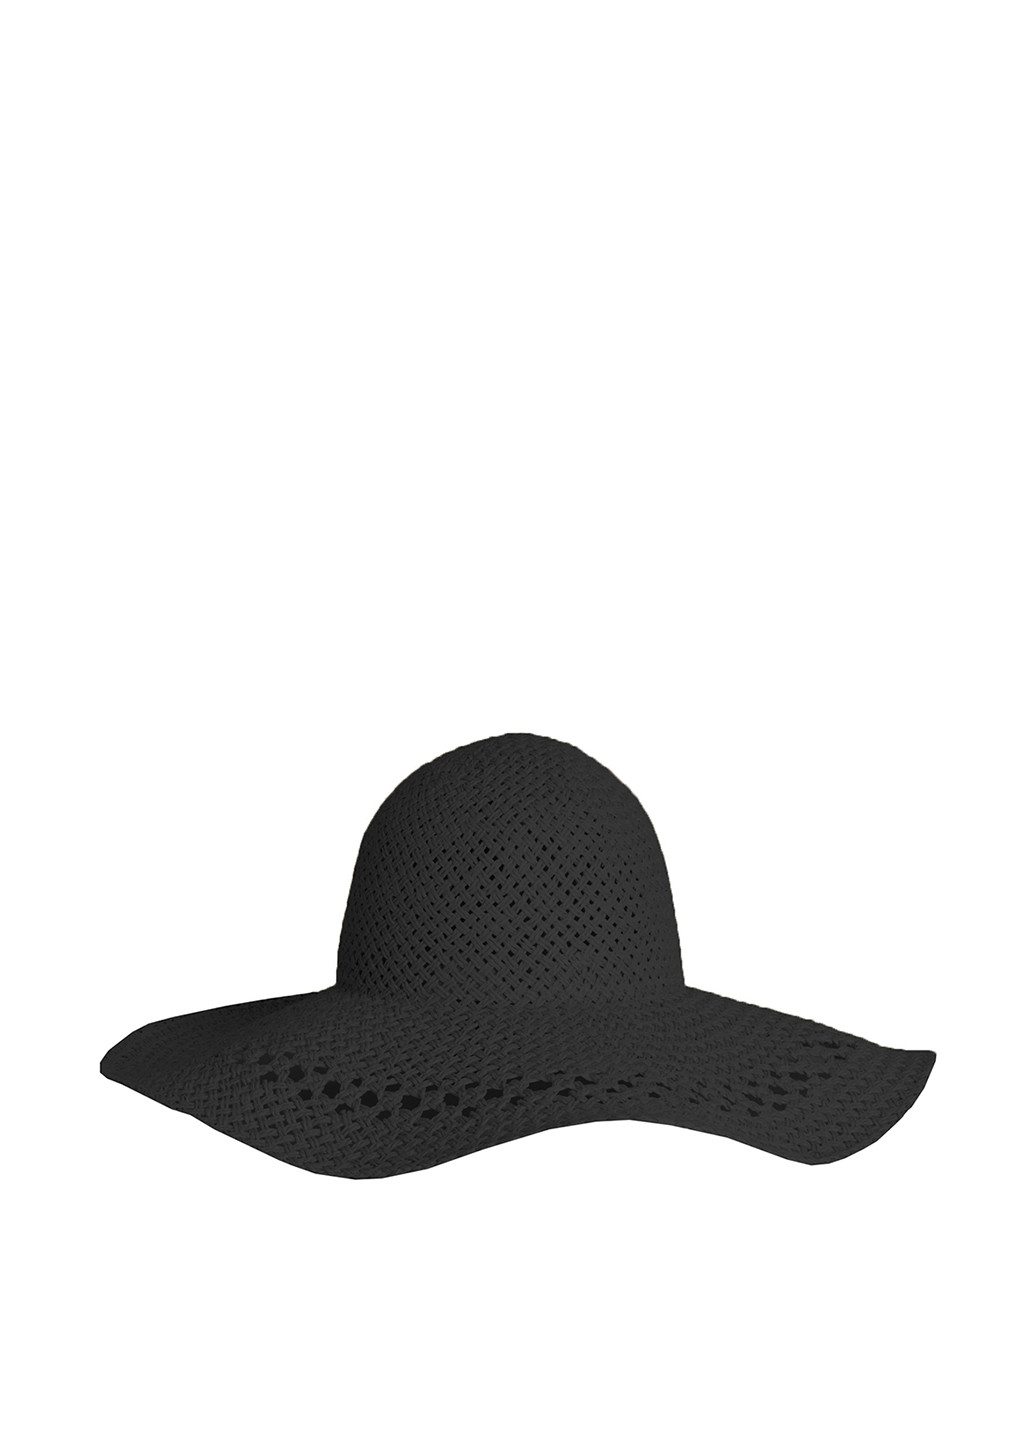 Шляпа H&M широкополая однотонная чёрная кэжуал искусственная солома